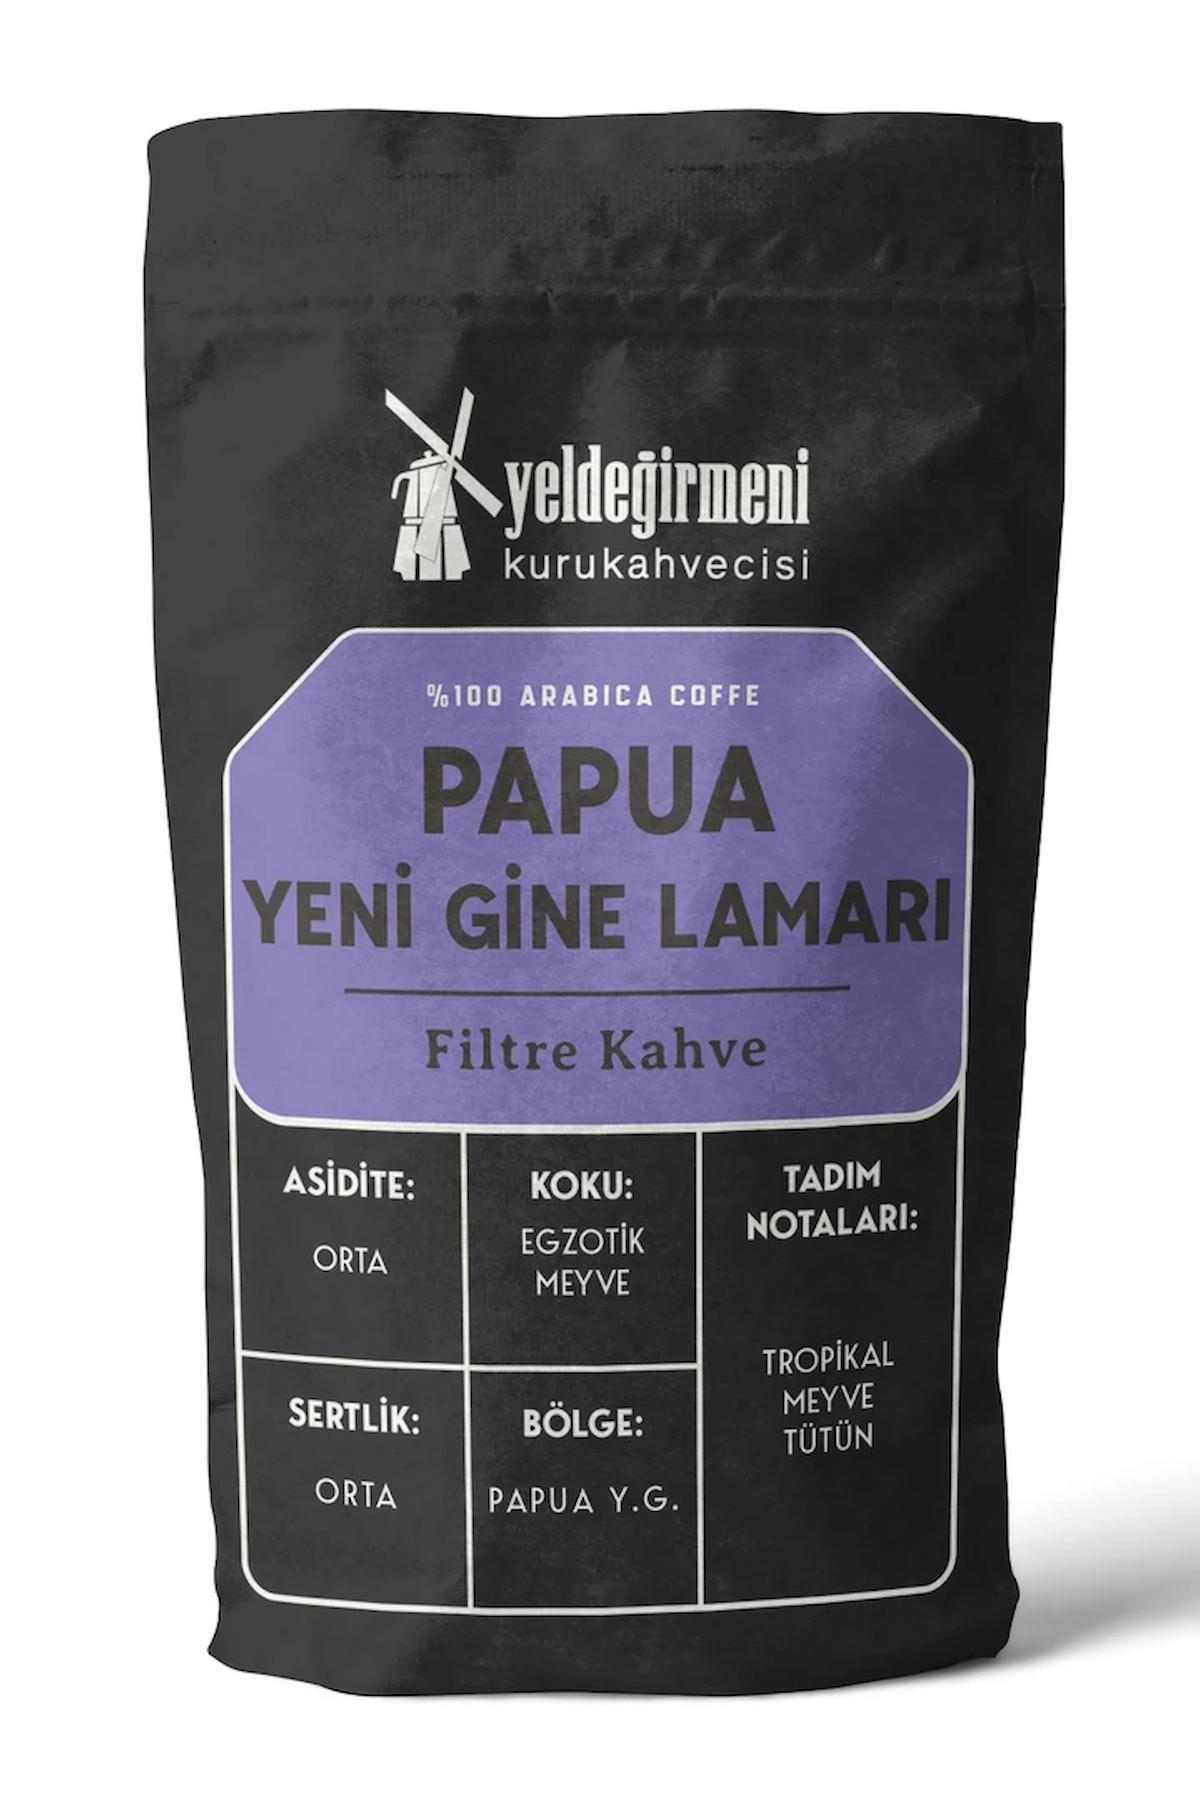 Yeldeğirmeni Kurukahvecisi Papua Yeni Gine Lamarı Filtre Kahve 1 kg